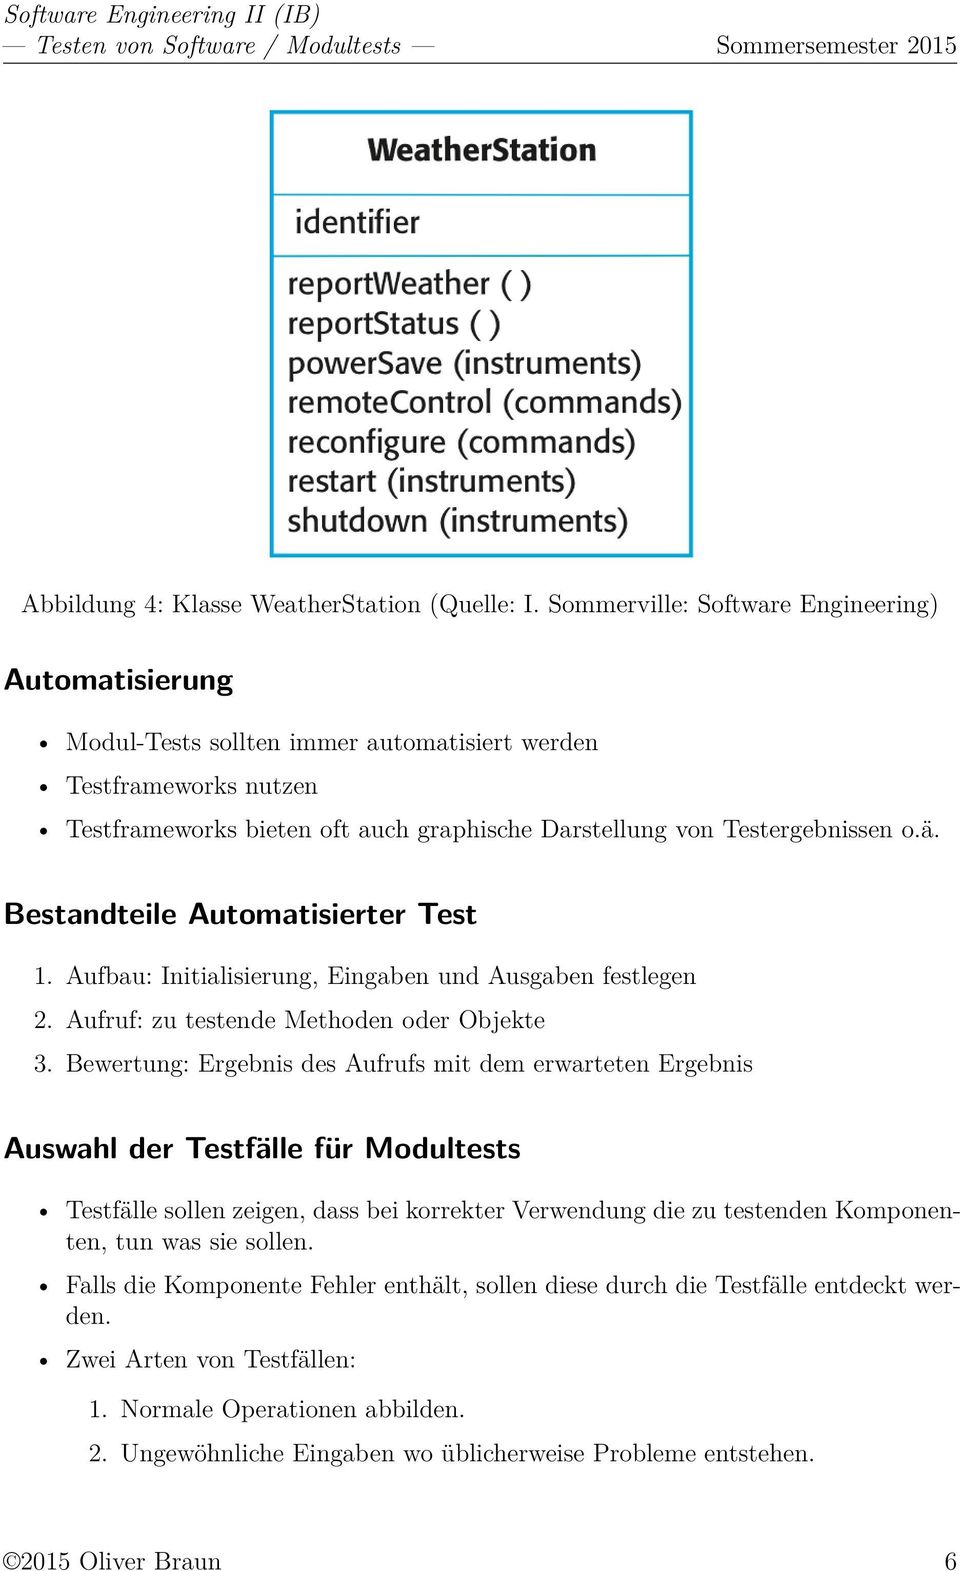 Bestandteile Automatisierter Test 1. Aufbau: Initialisierung, Eingaben und Ausgaben festlegen 2. Aufruf: zu testende Methoden oder Objekte 3.